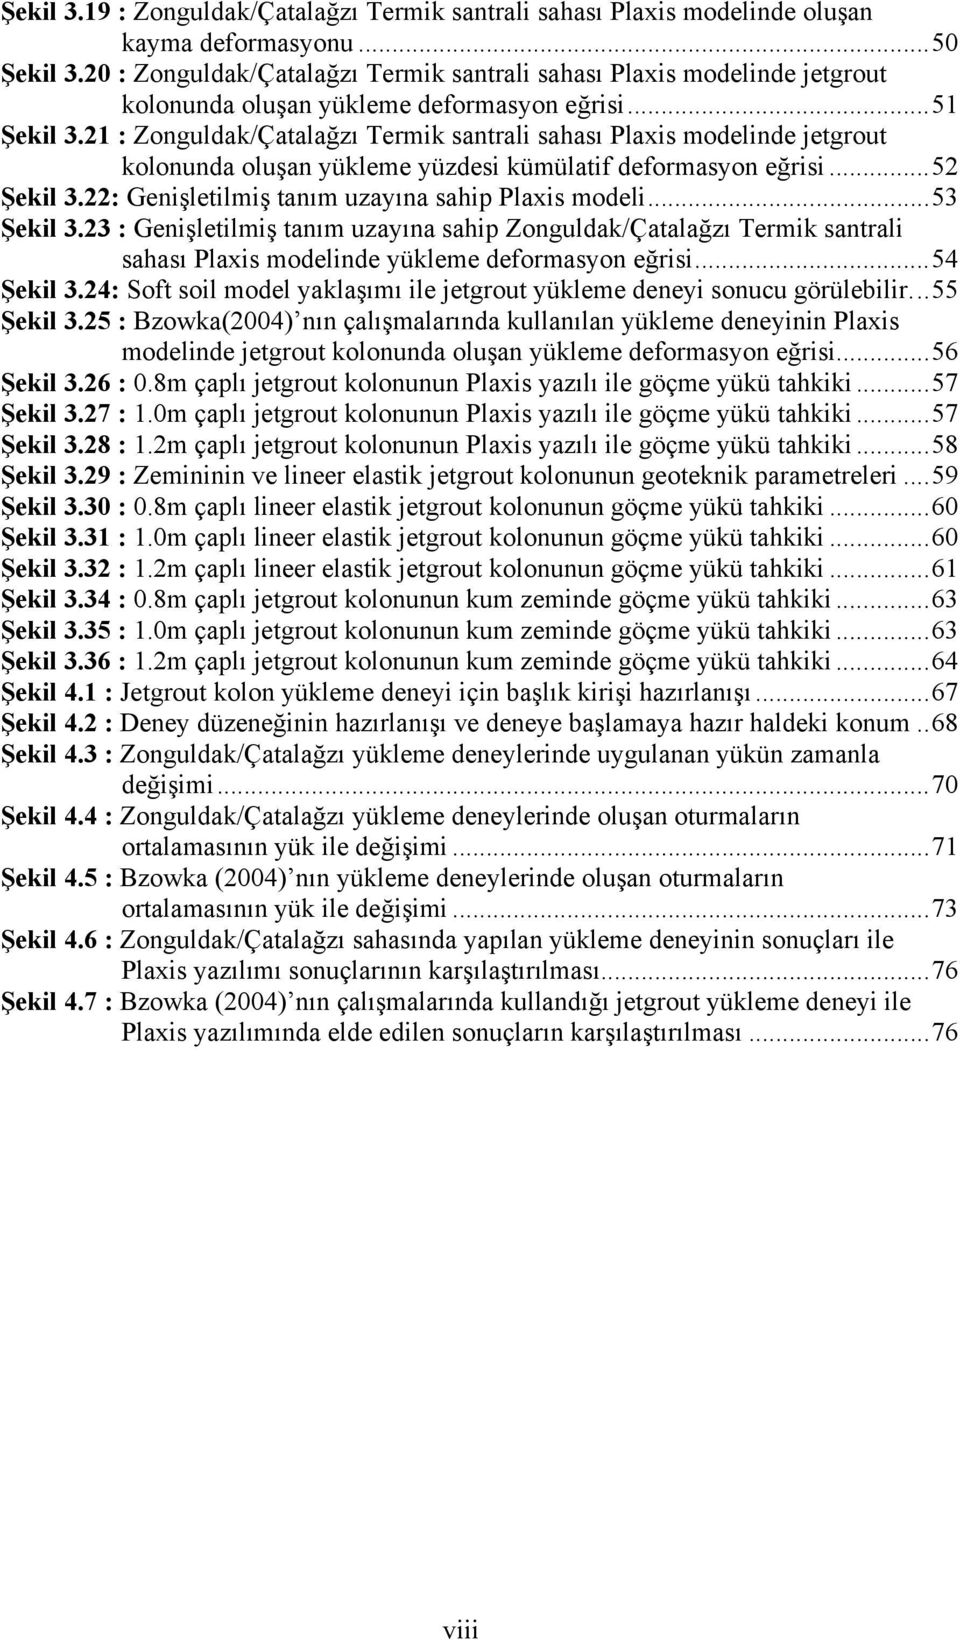 21 : Zonguldak/Çatalağzı Termik santrali sahası Plaxis modelinde jetgrout kolonunda oluşan yükleme yüzdesi kümülatif deformasyon eğrisi...52 Şekil 3.